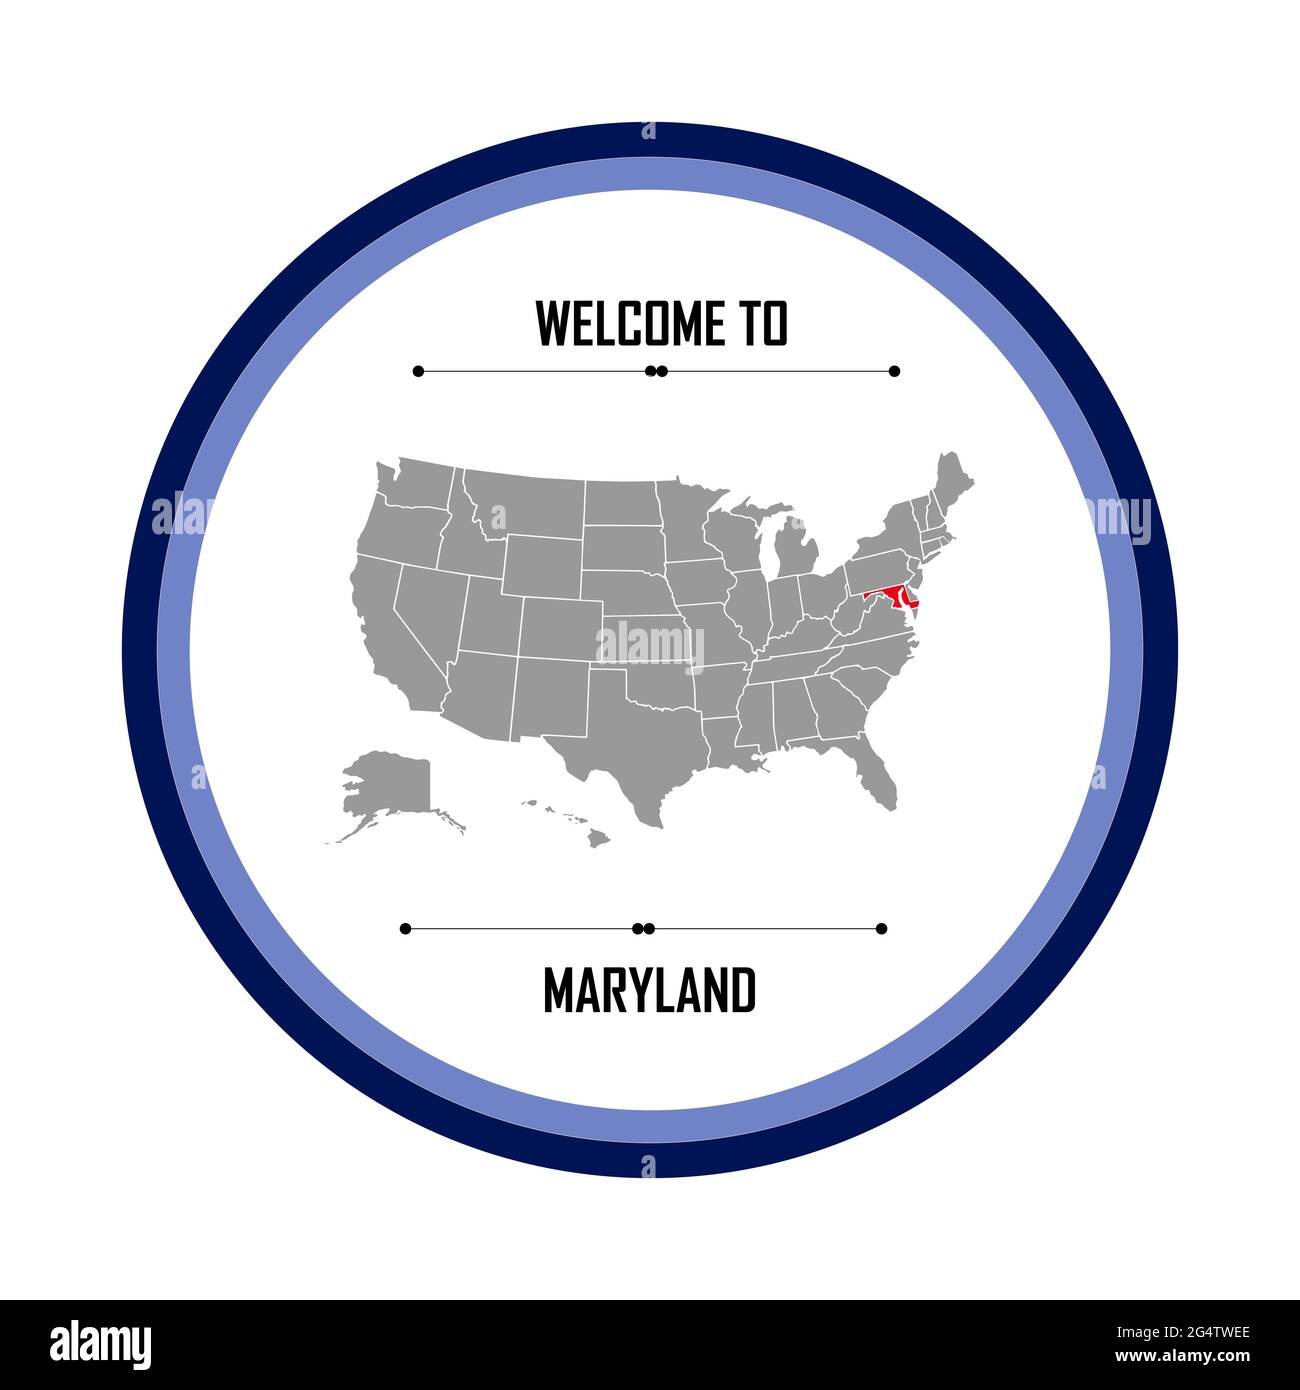 Le Maryland, carte des États-Unis d'Amérique en vue du Maryland, site américain Banque D'Images